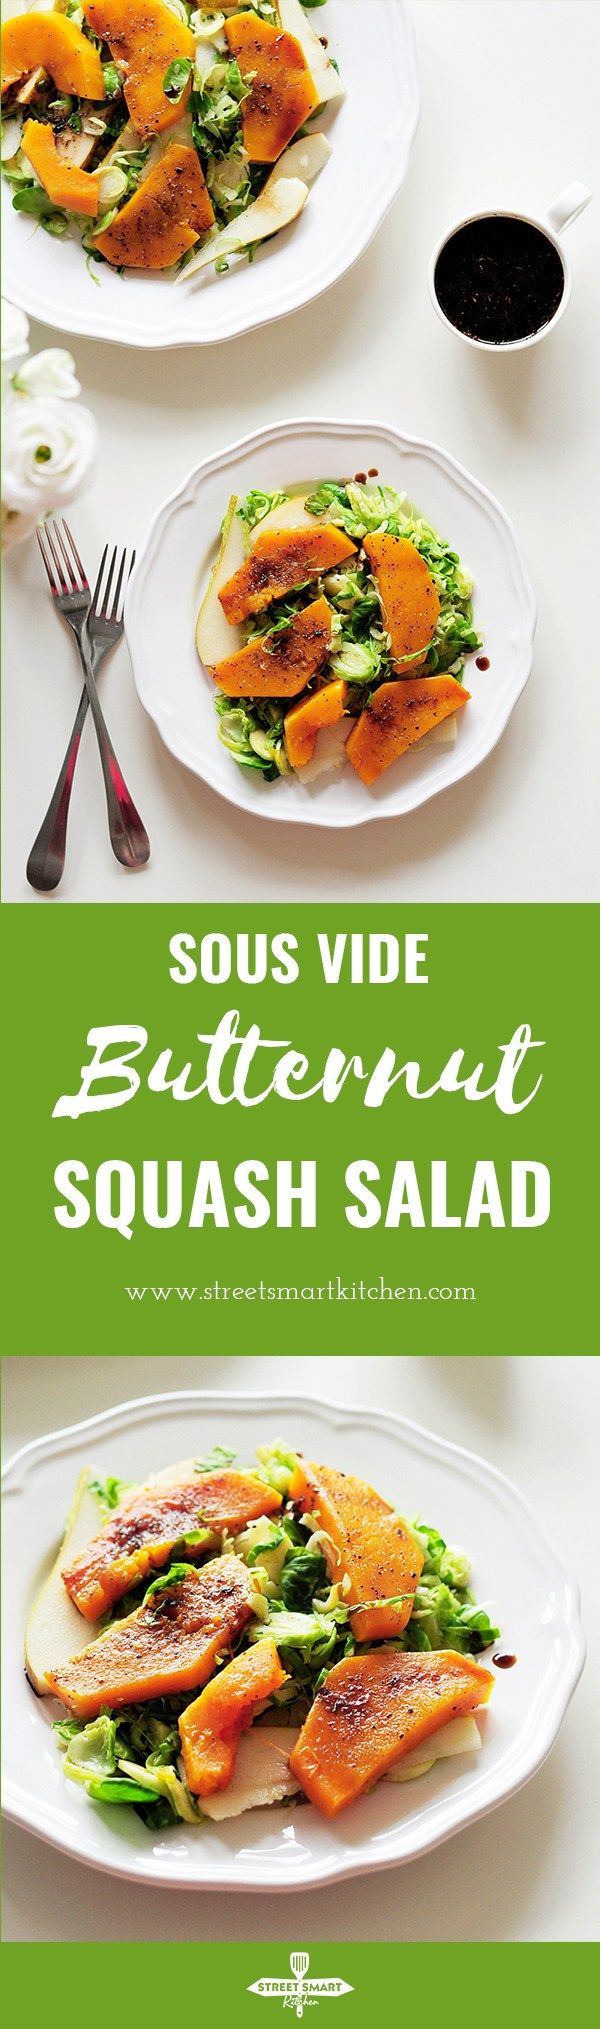 Sous Vide Side Dishes
 Sous Vide Butternut Squash Salad Recipe